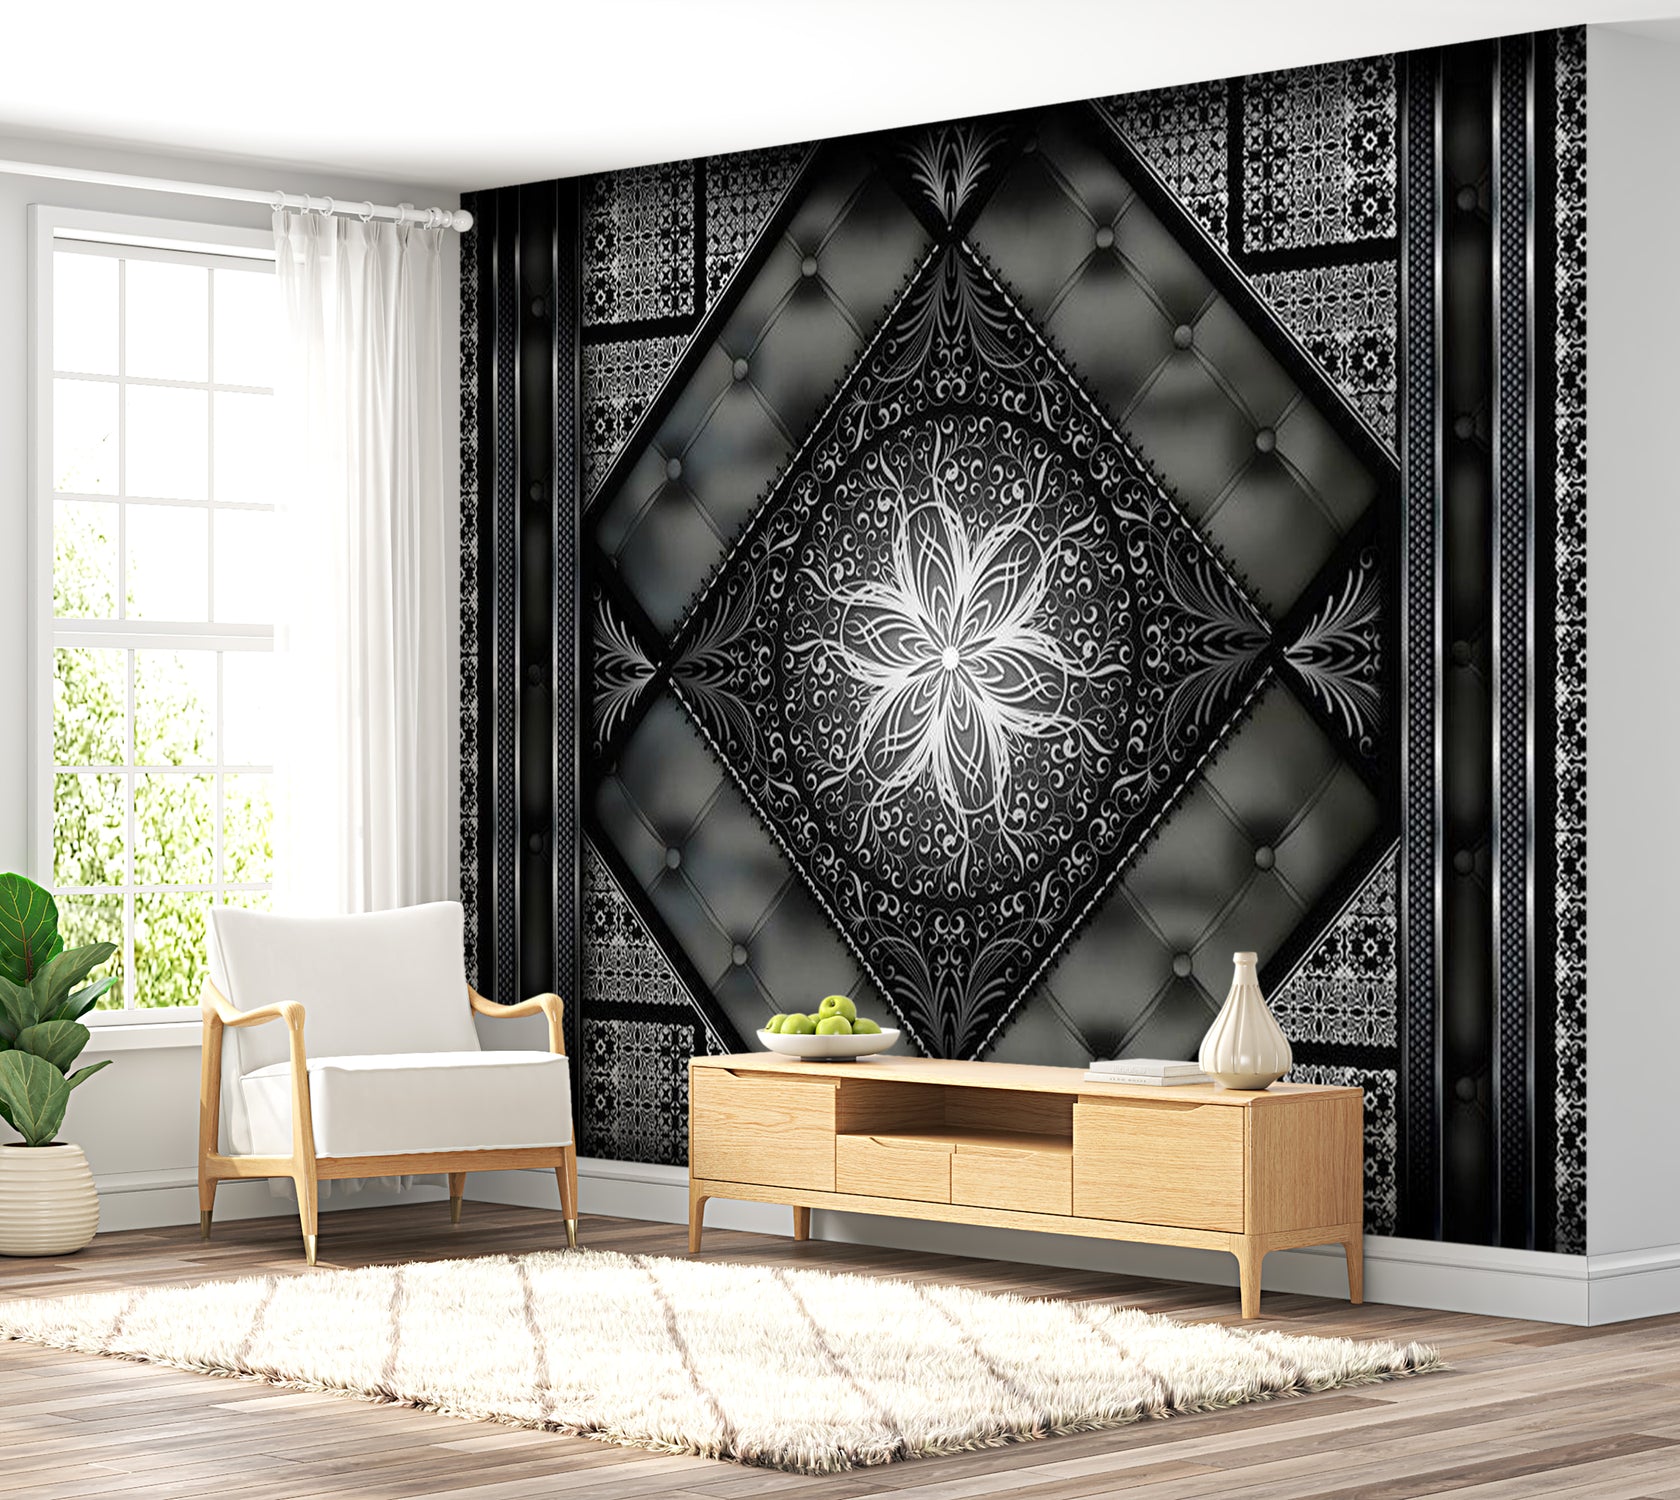 Mandala Wallpaper Wall Mural - Black Mosaic